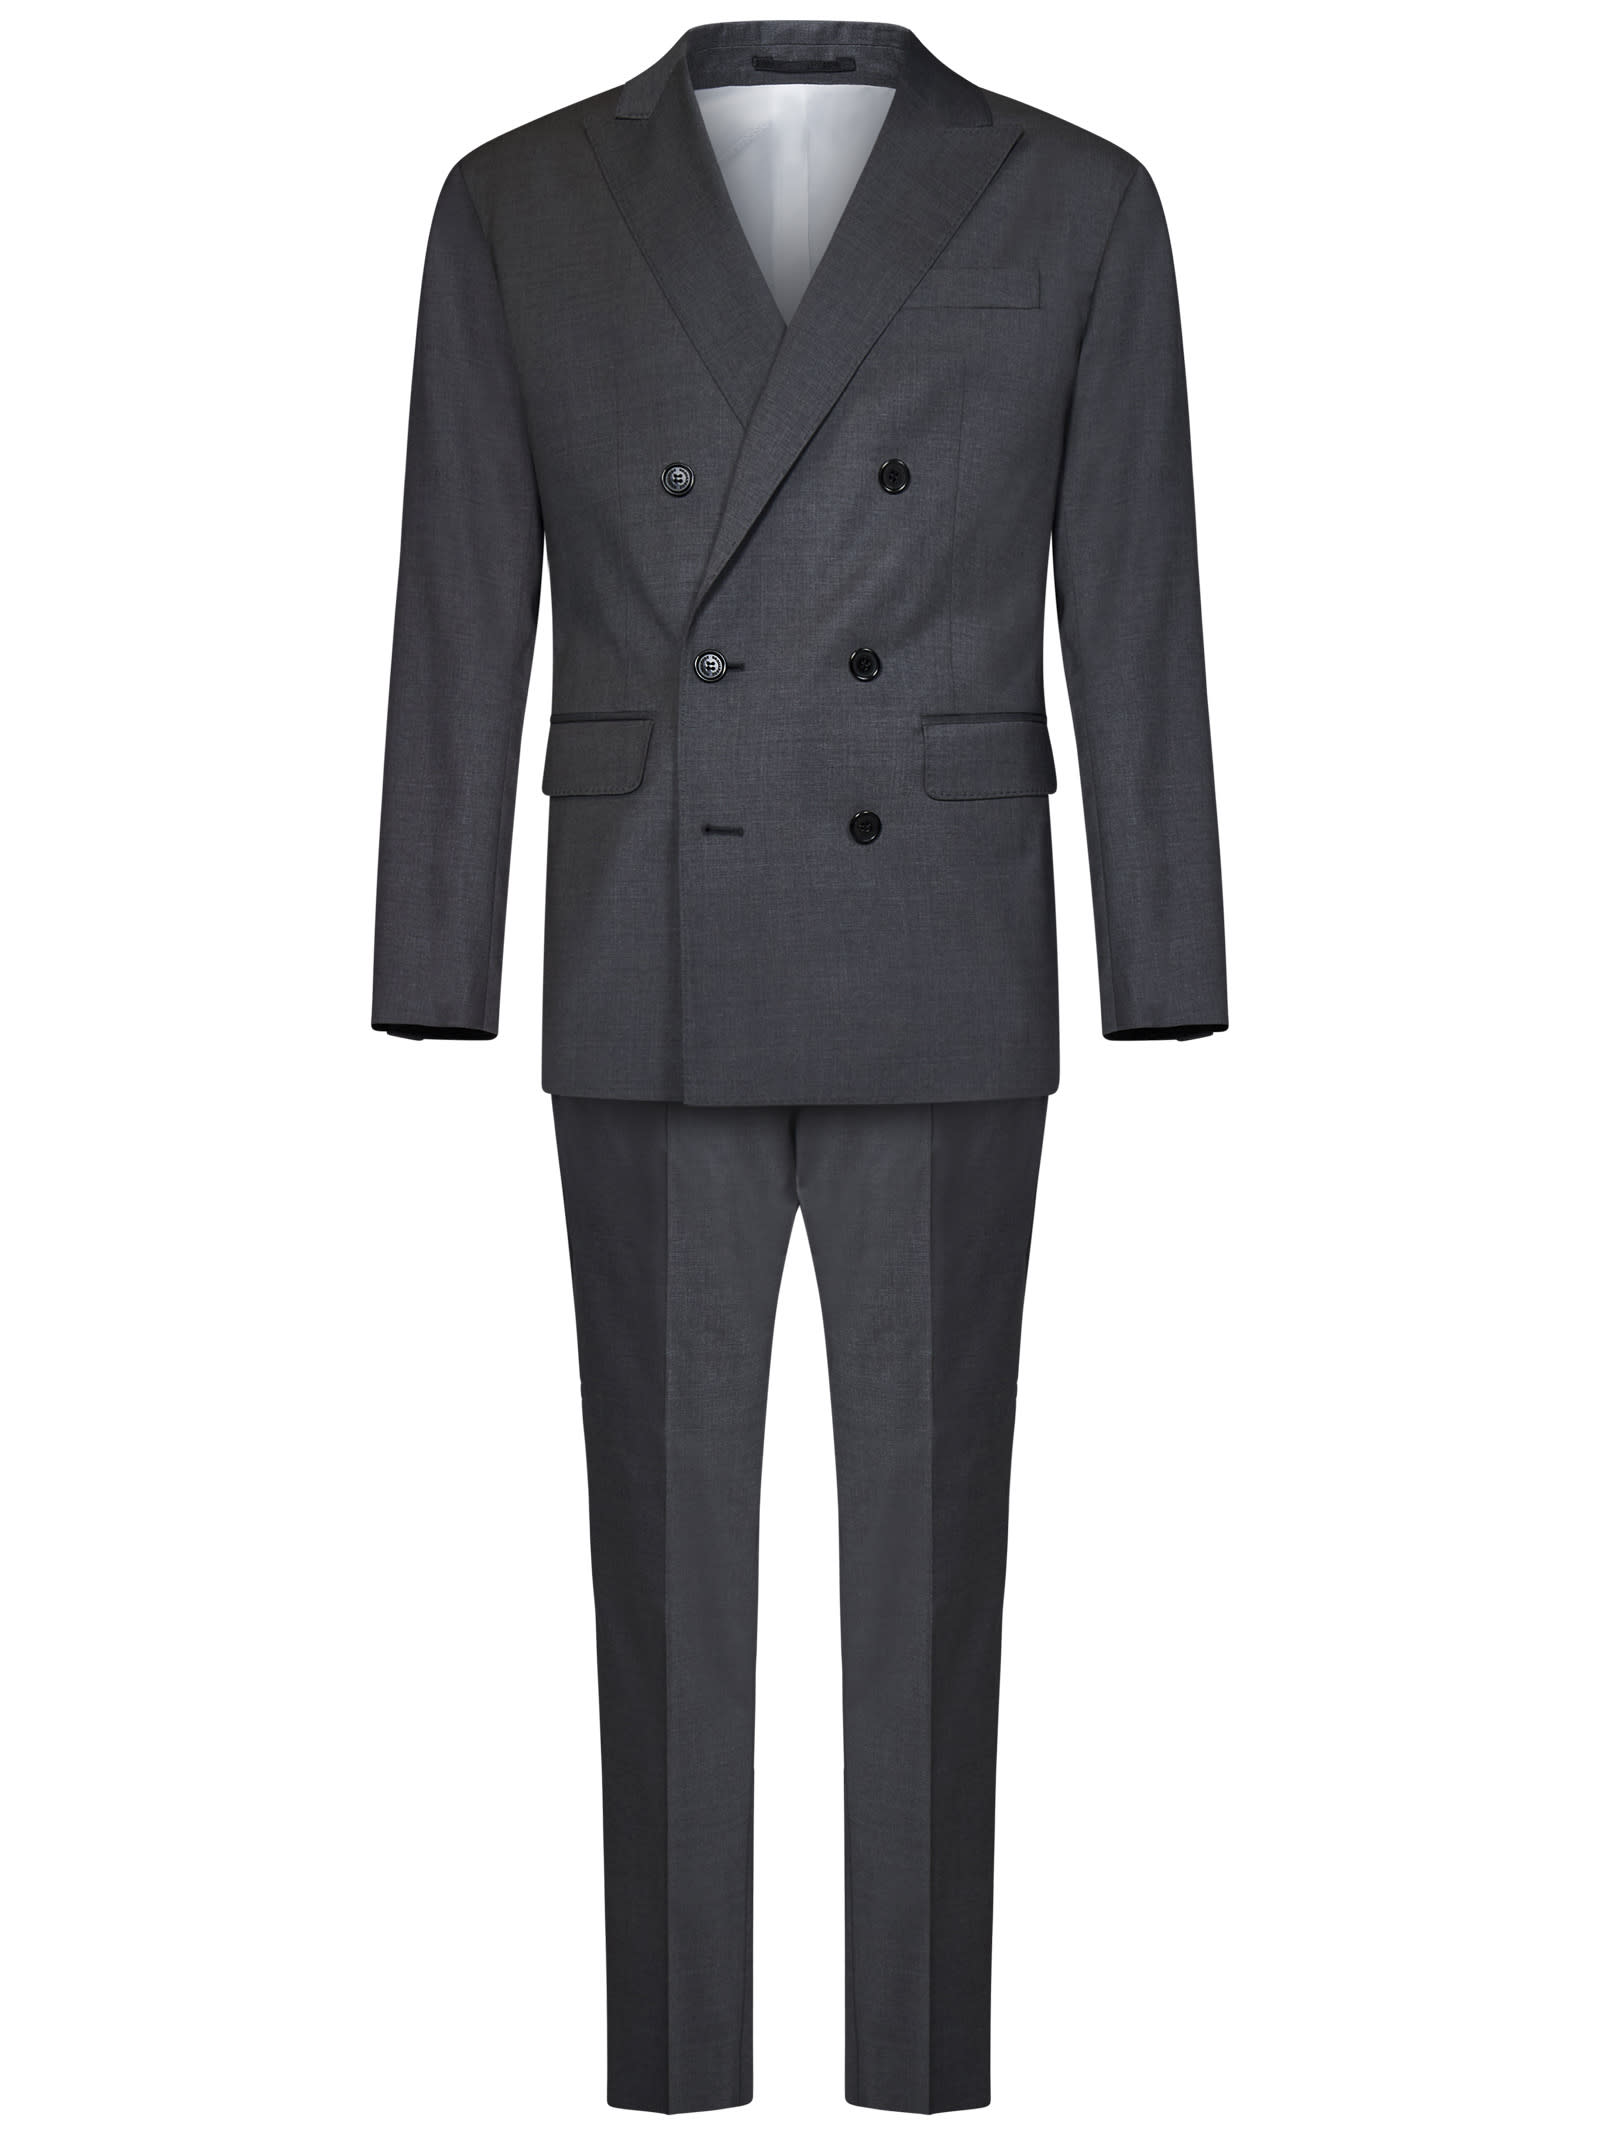 Wallstreet Suit